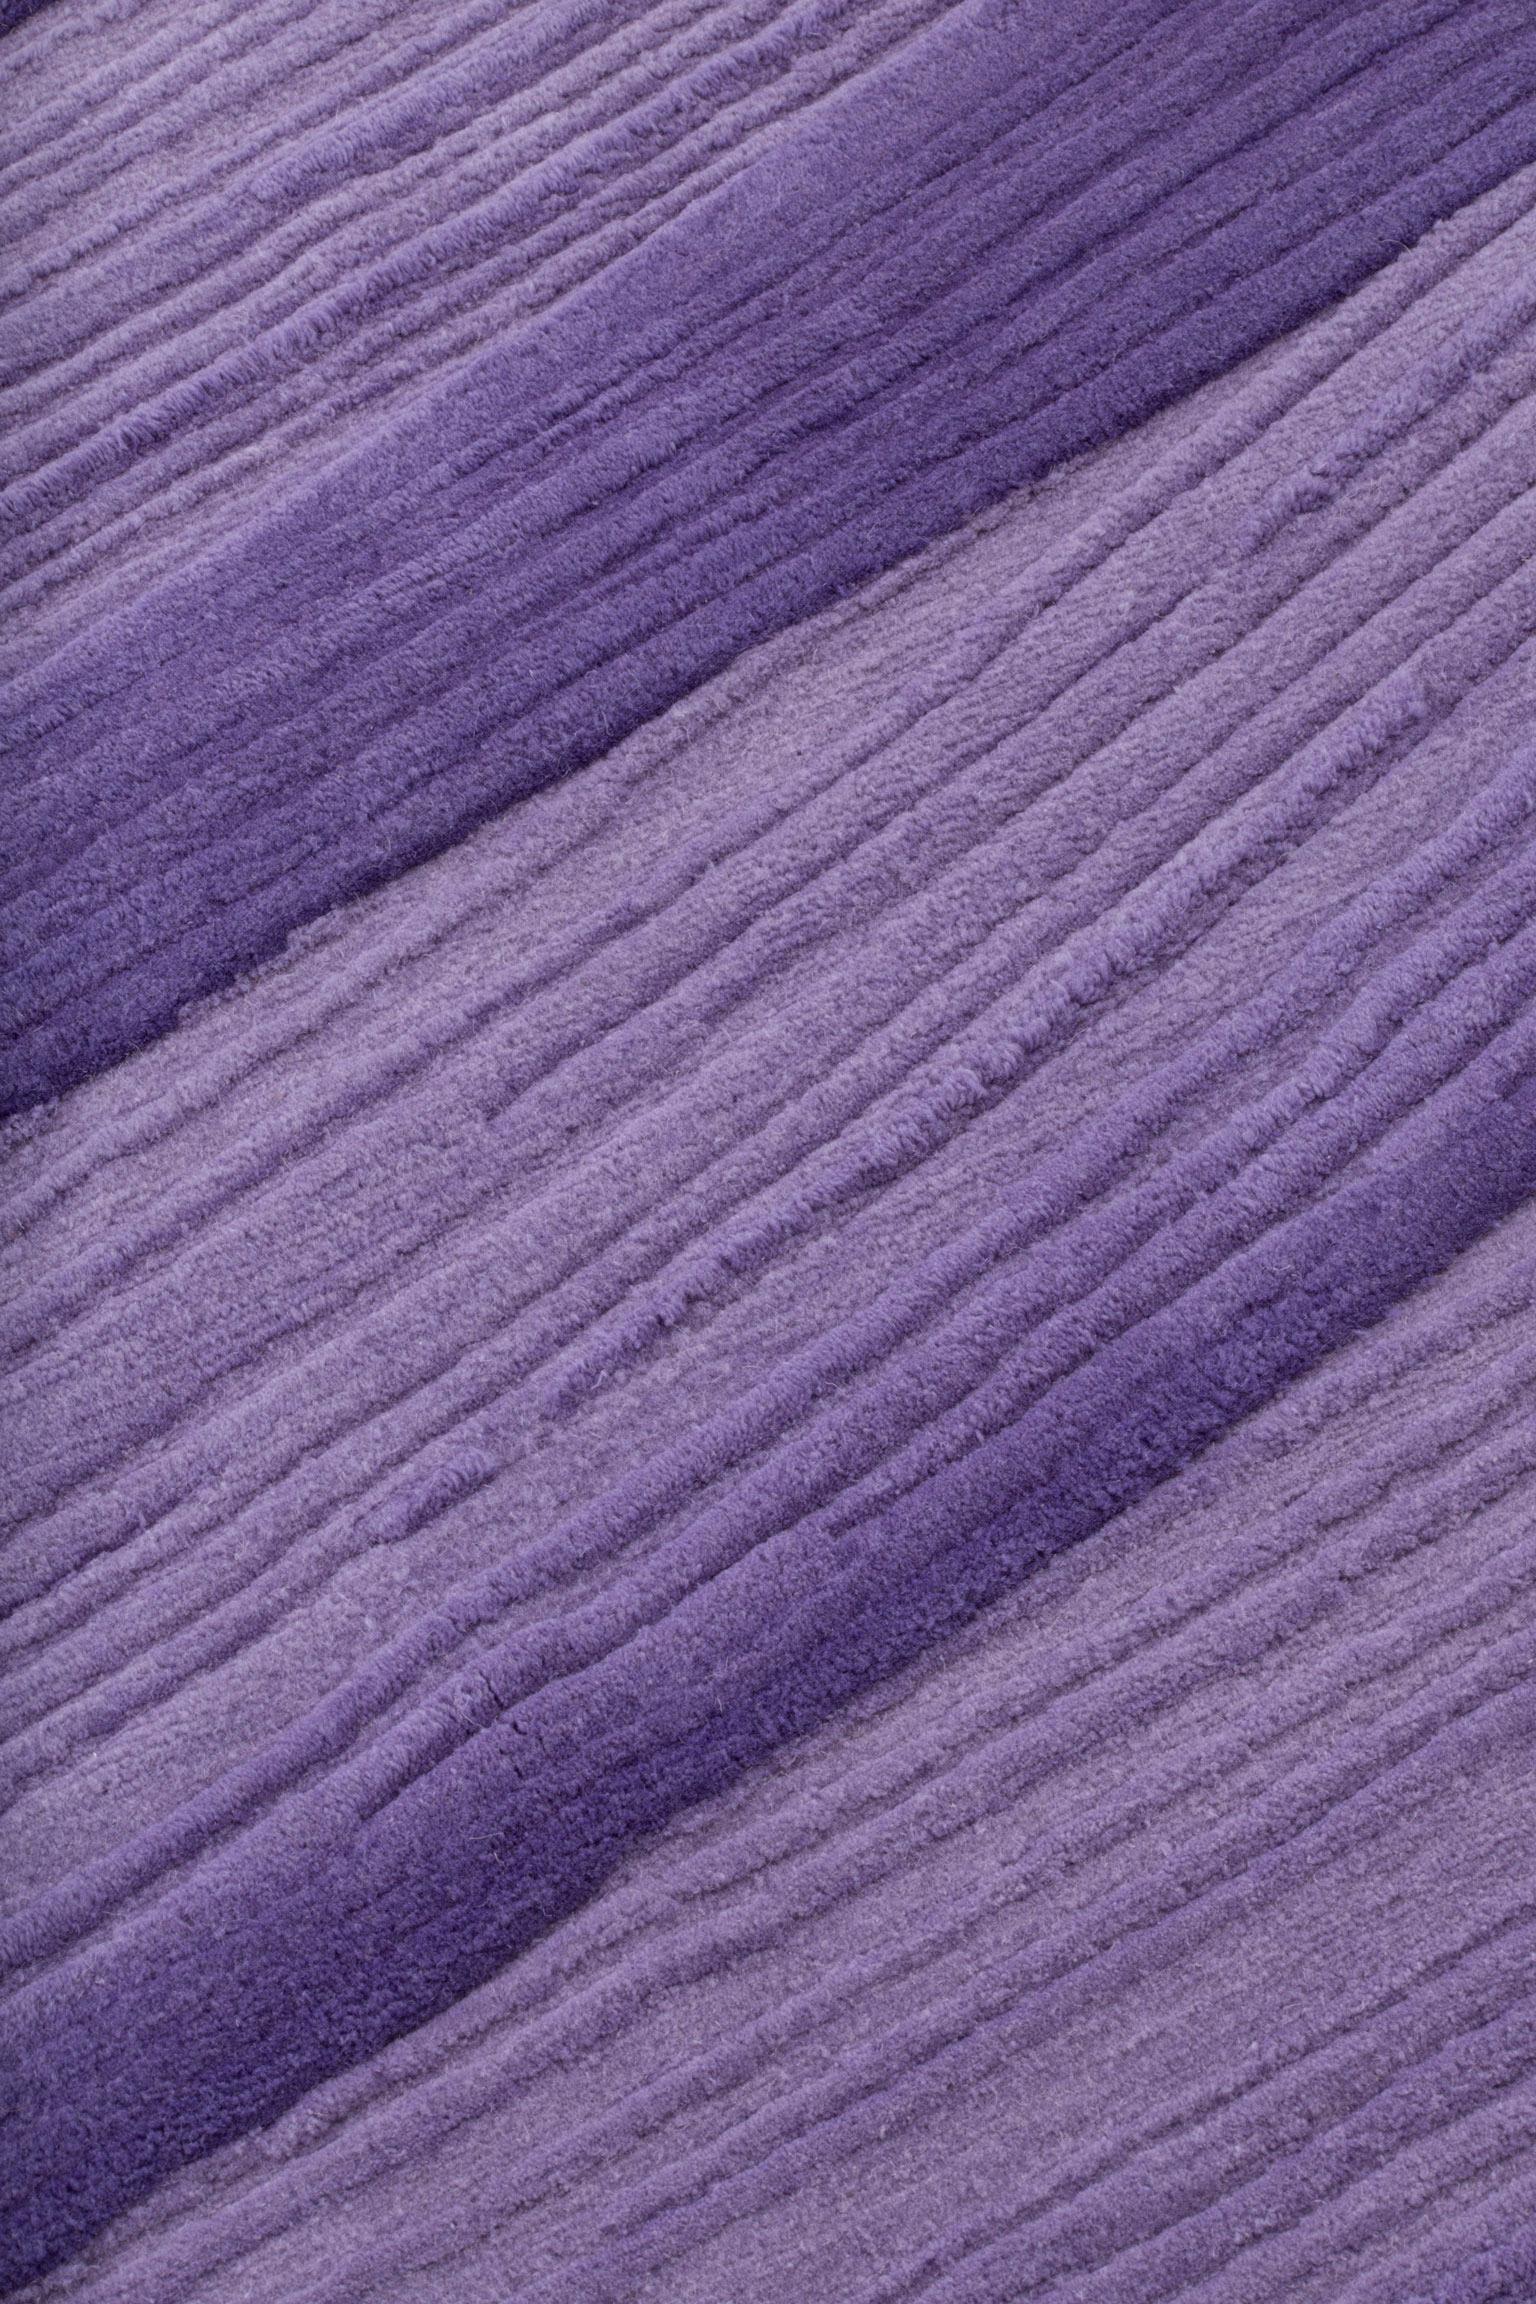 Nepalese cc-tapis Stroke 1.0 Handmade Violet  Rug in Wool by Sabine Marcelis  For Sale